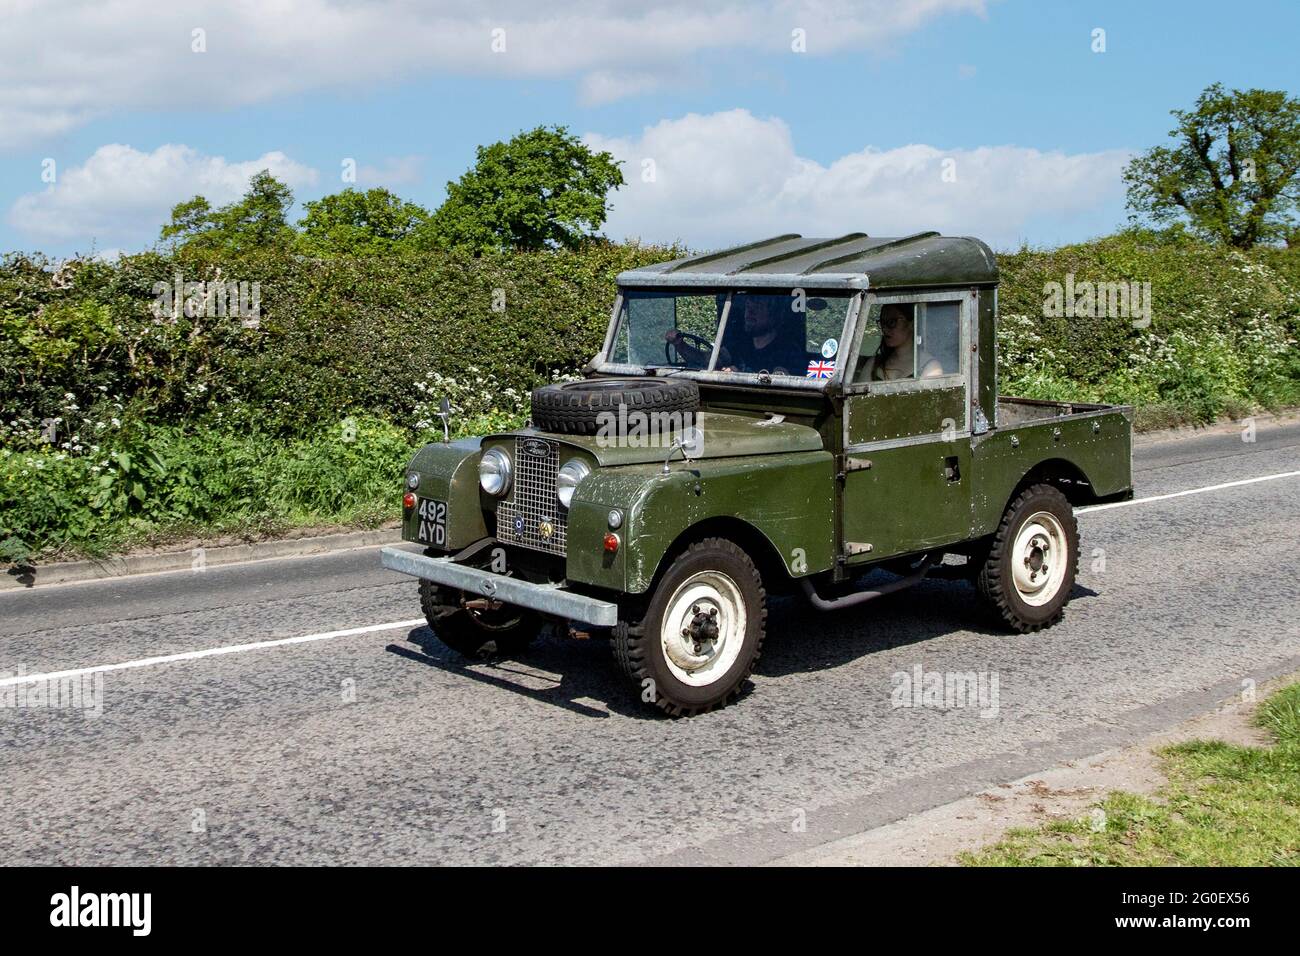 1958 50s SWB 90 Land Rover Green Benzine Single Cab Pick-up; Fahrzeugverkehr, Fahrzeuge bewegen, Autos, Fahrzeug fahren auf britischen Straßen, Motoren, fahren auf dem britischen Straßennetz. Fahren auf Landstraßen auf dem Weg zur Capesthorne Hall, Oldtimer-Show in Ceshire. Stockfoto